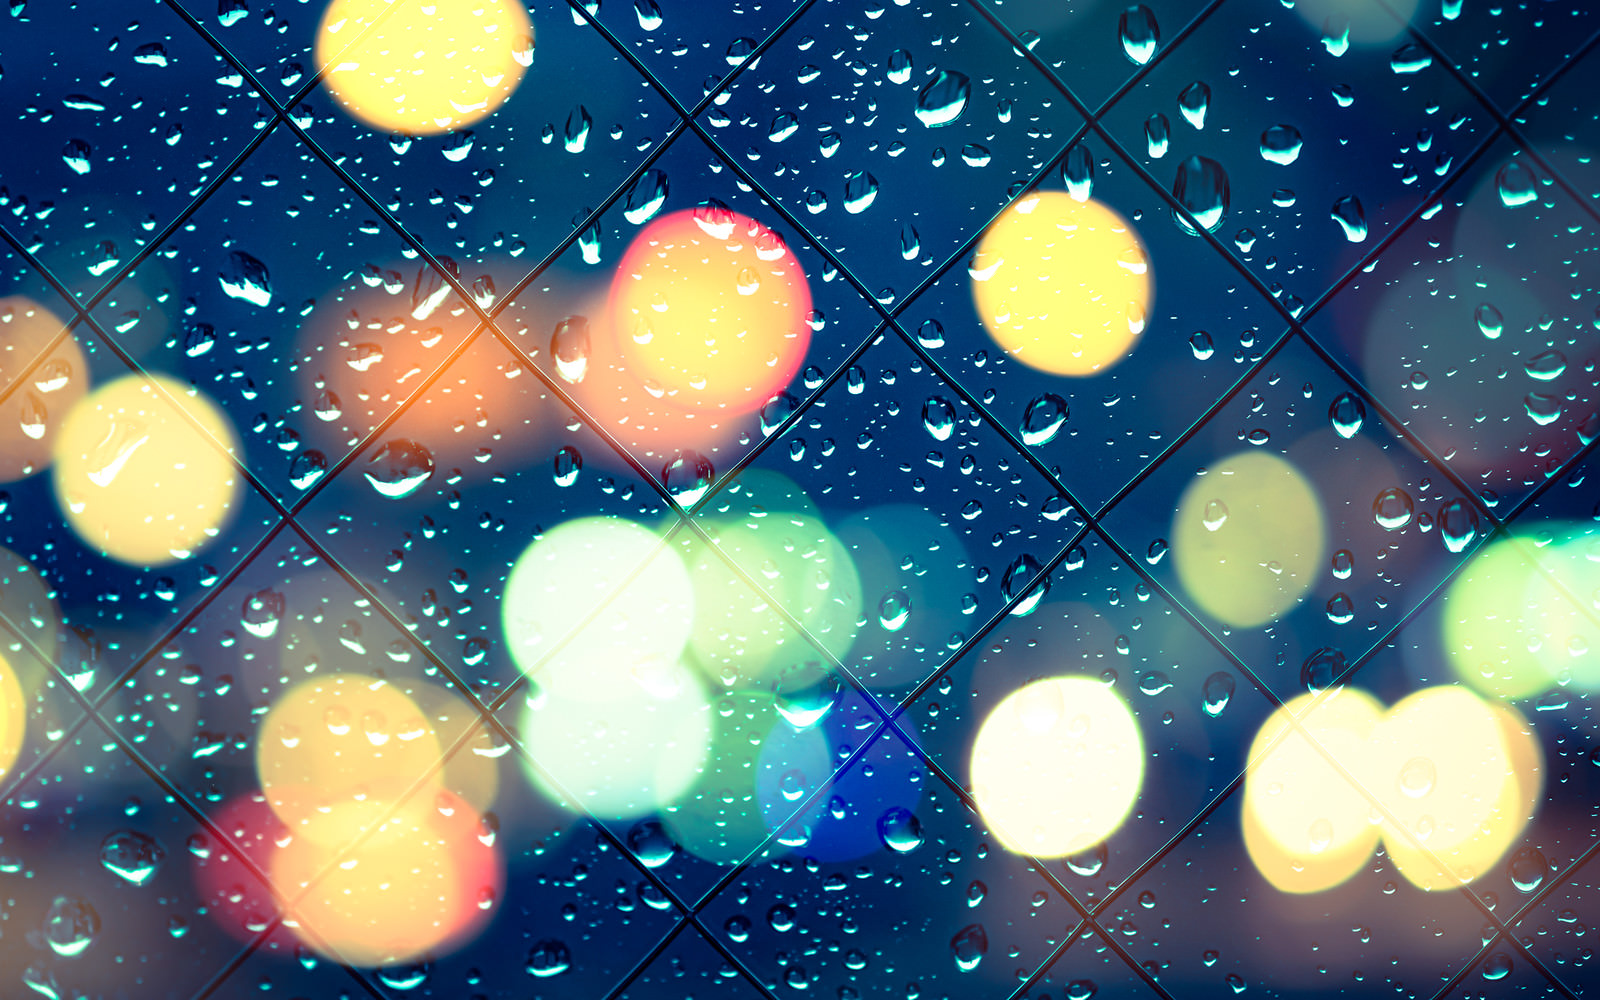 「ネオンの光と窓の水滴」の写真